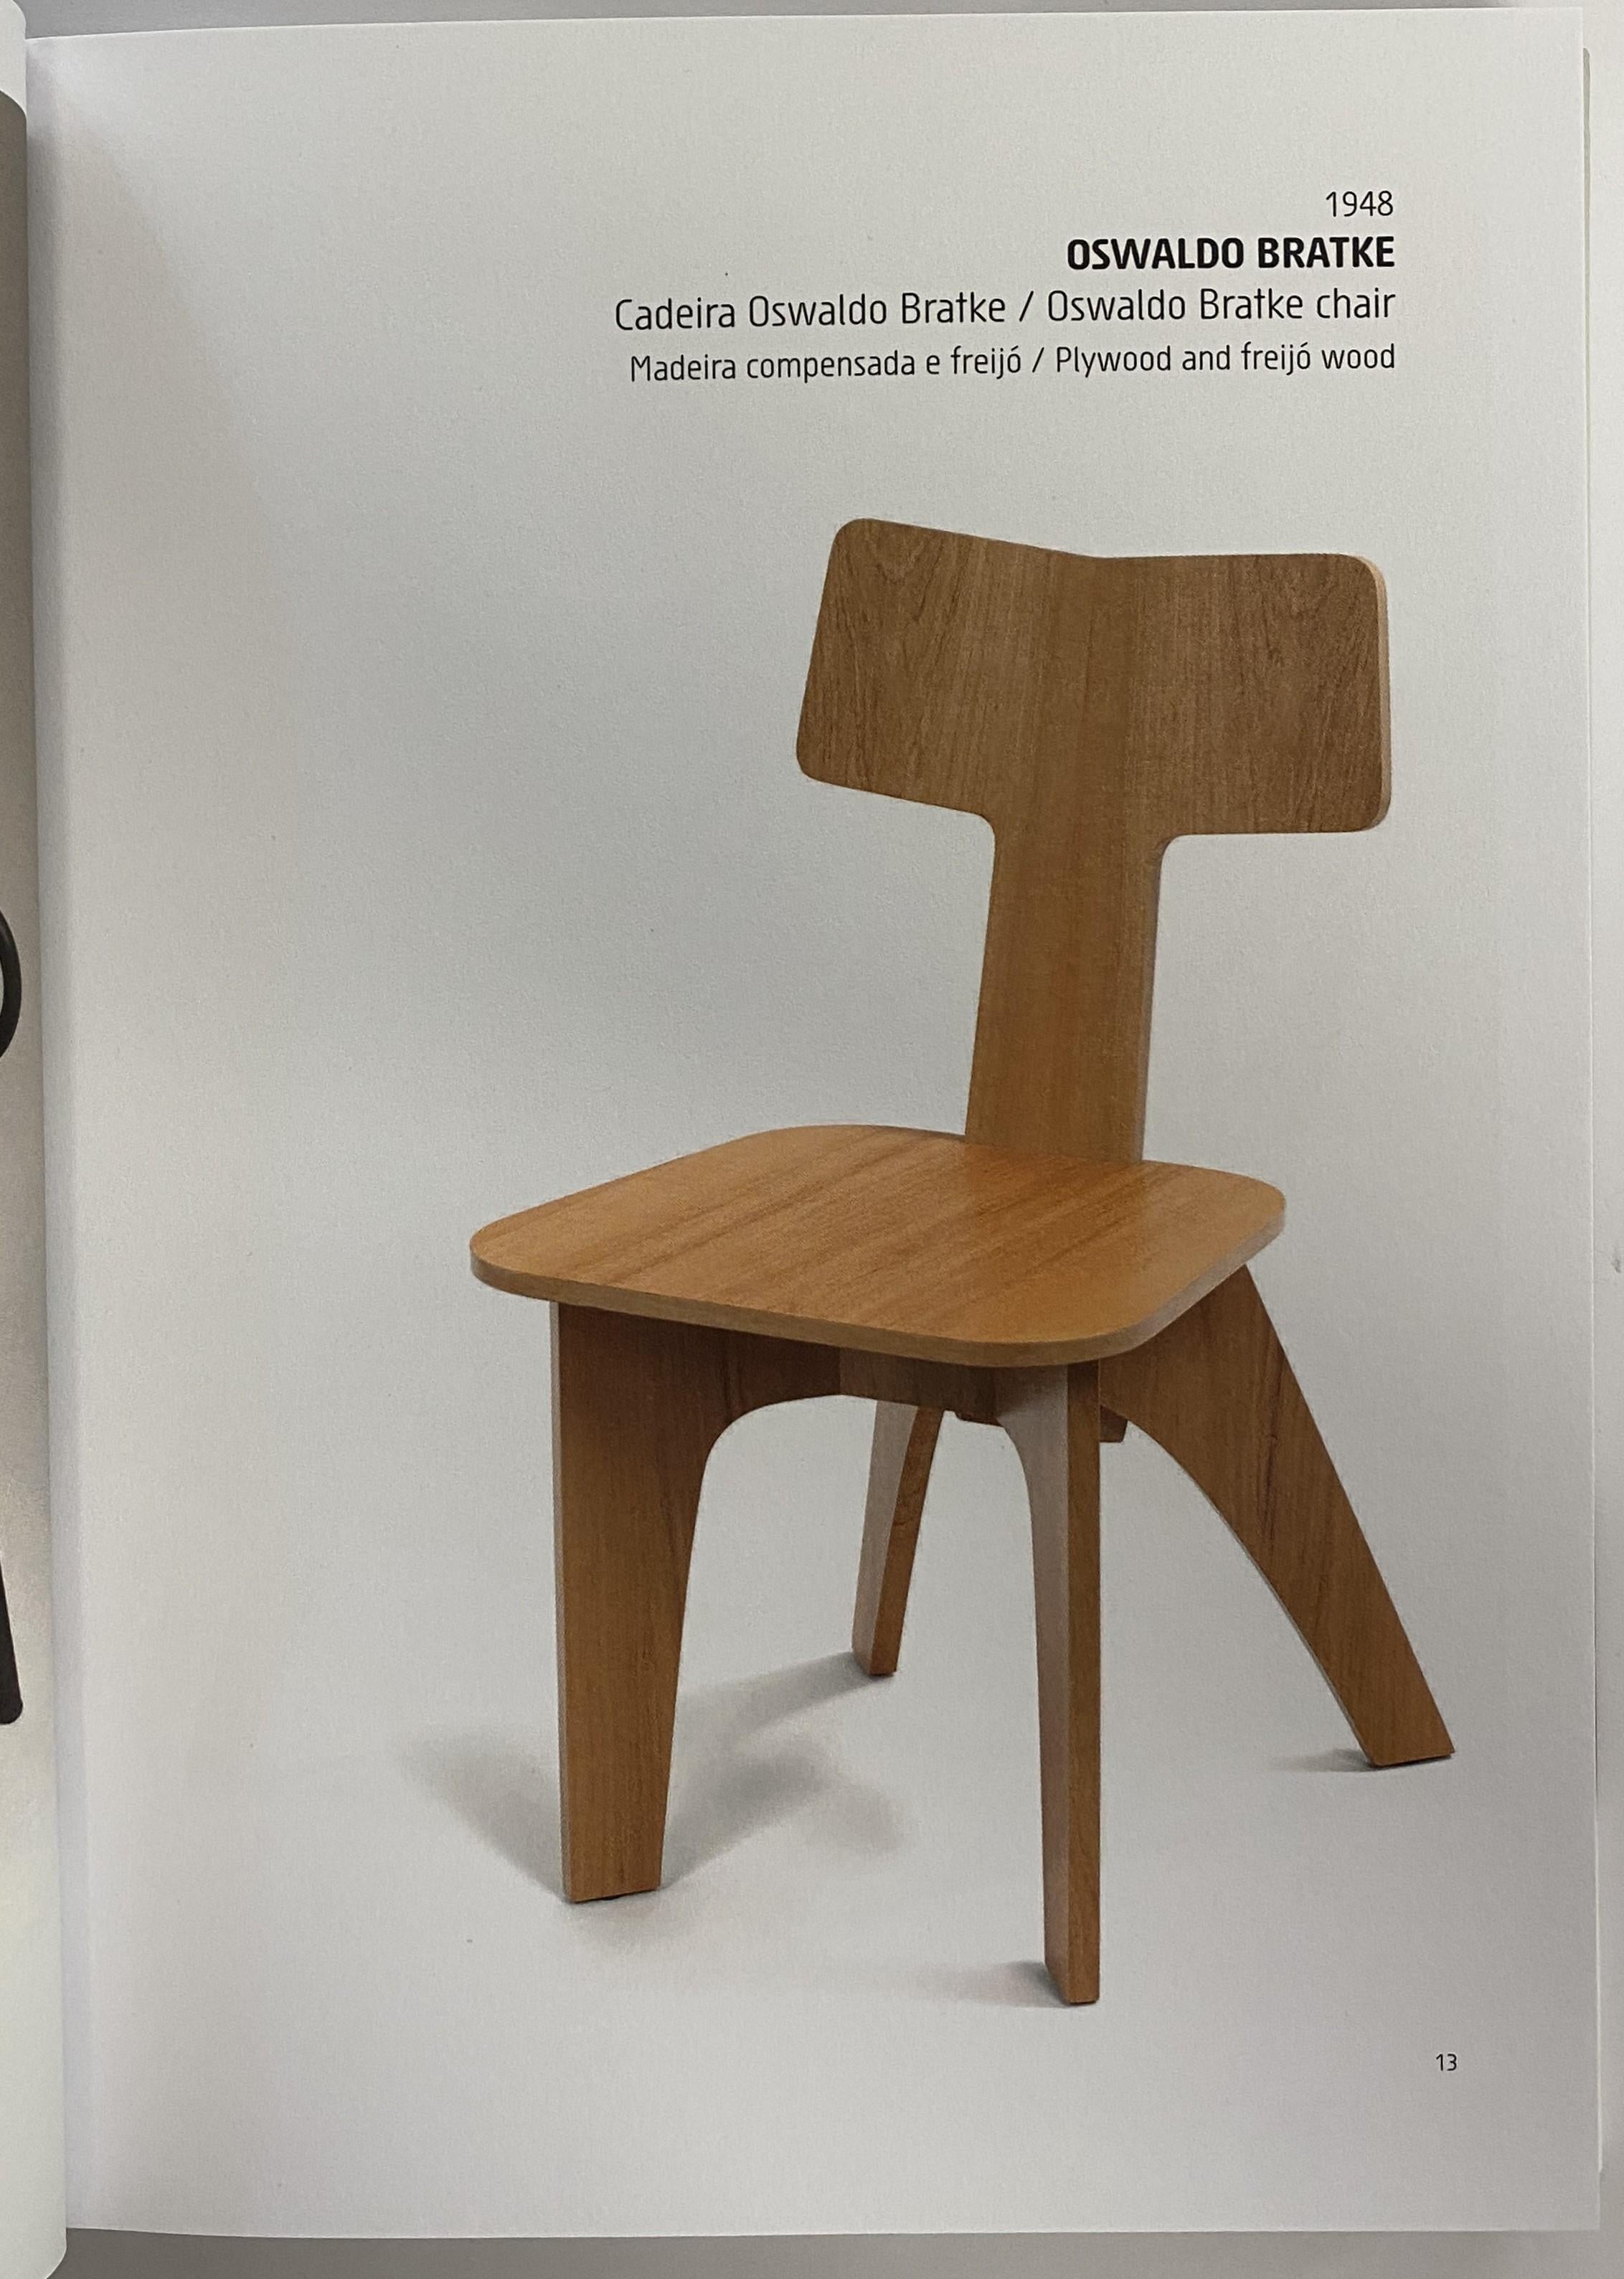 Brazilian Furniture Design editor Otavio Nazareth (Book) In Good Condition For Sale In North Yorkshire, GB